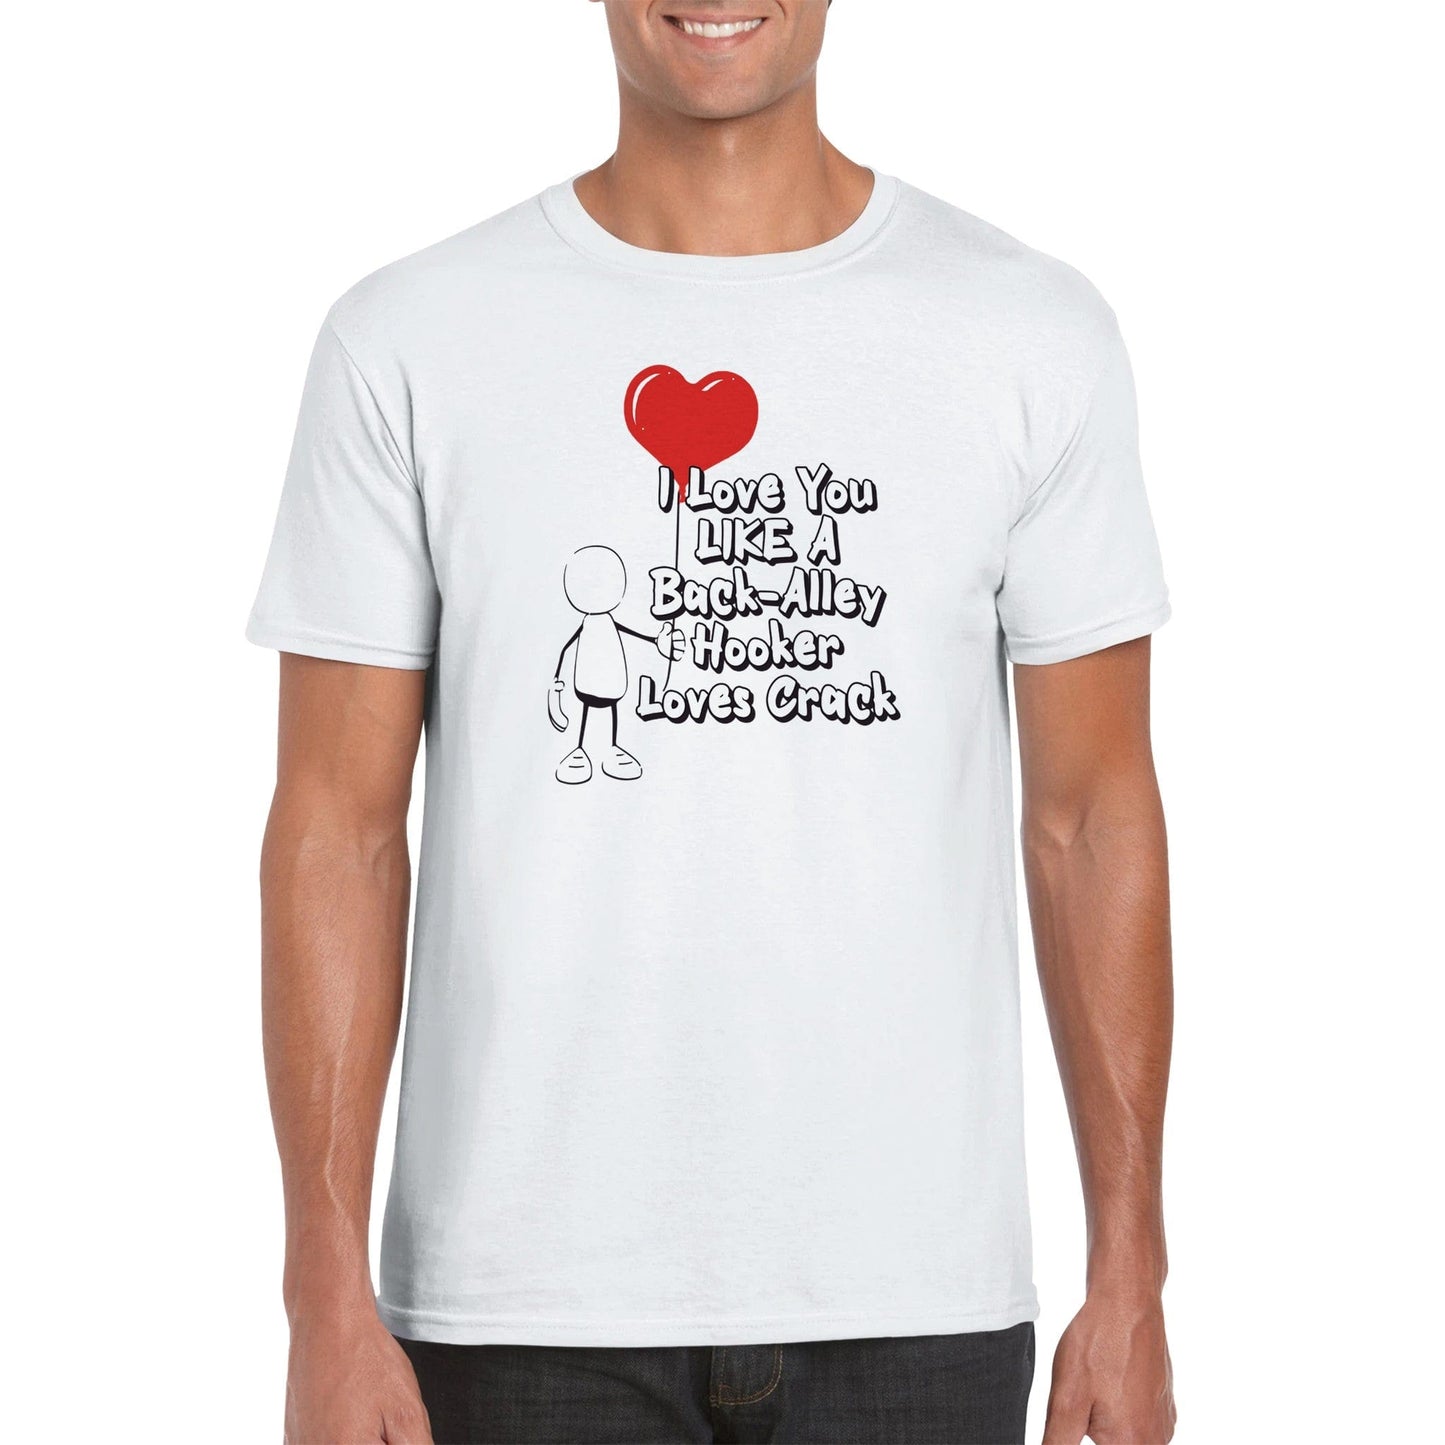 Like A Hooker Loves Crack T-Shirt Graphic Tee Australia Online